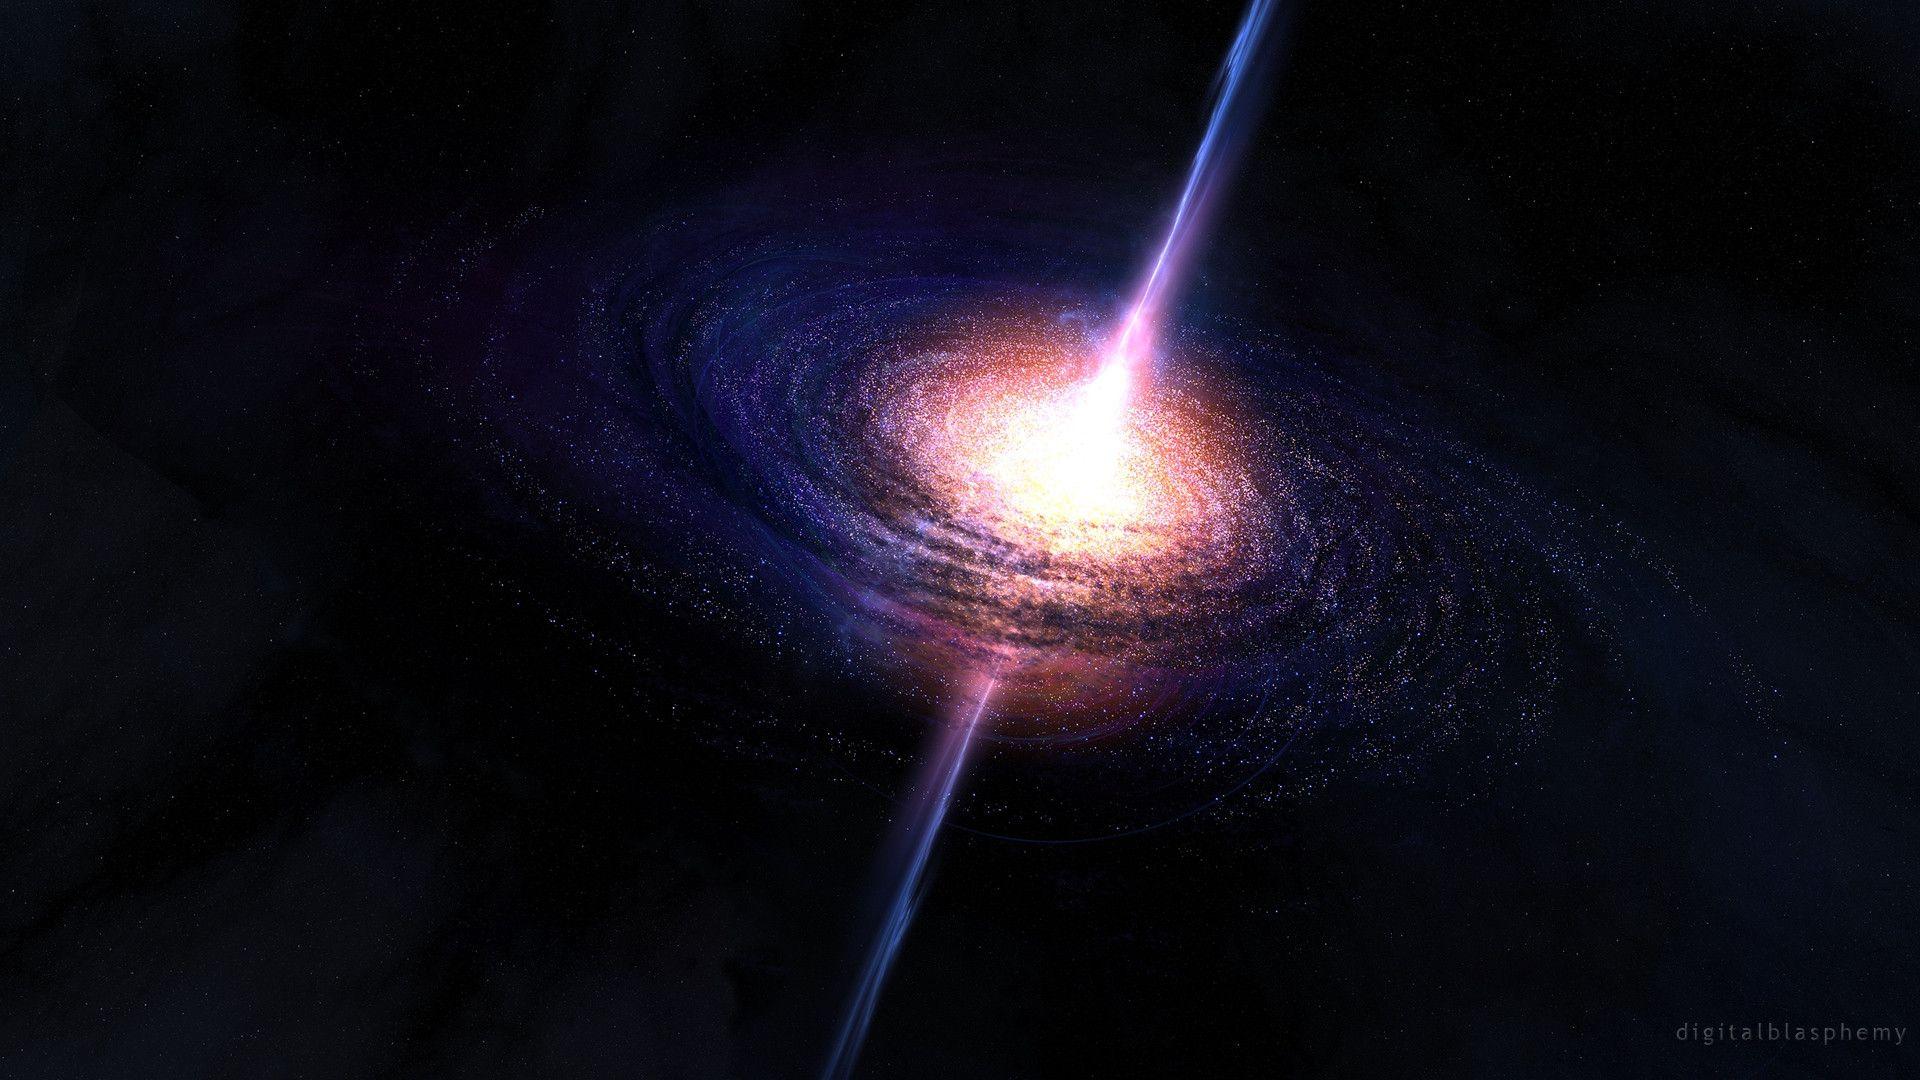 Supermassive Black Hole Wallpaper Free Supermassive Black Hole Background